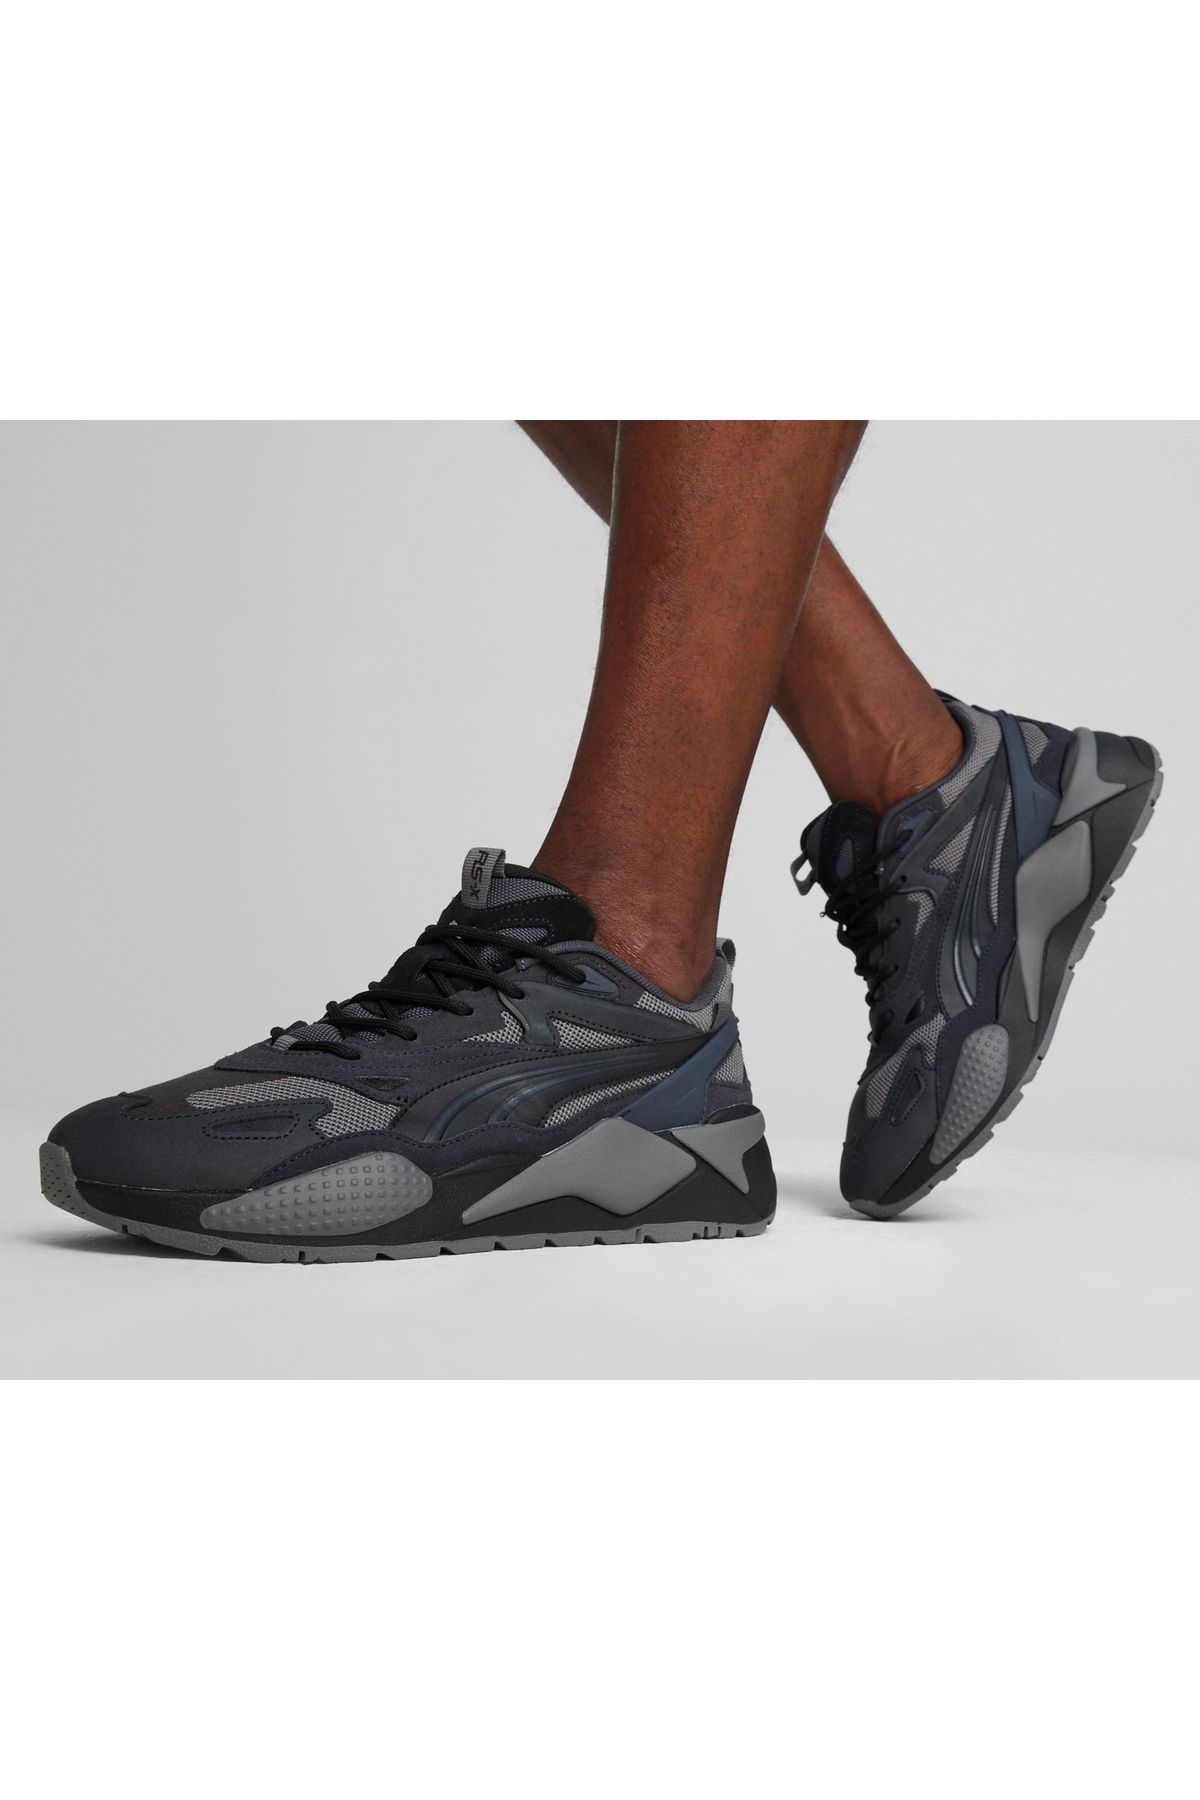 Puma Rs-X Efekt Prm Günlük Ayakkabı Sneaker Siyah